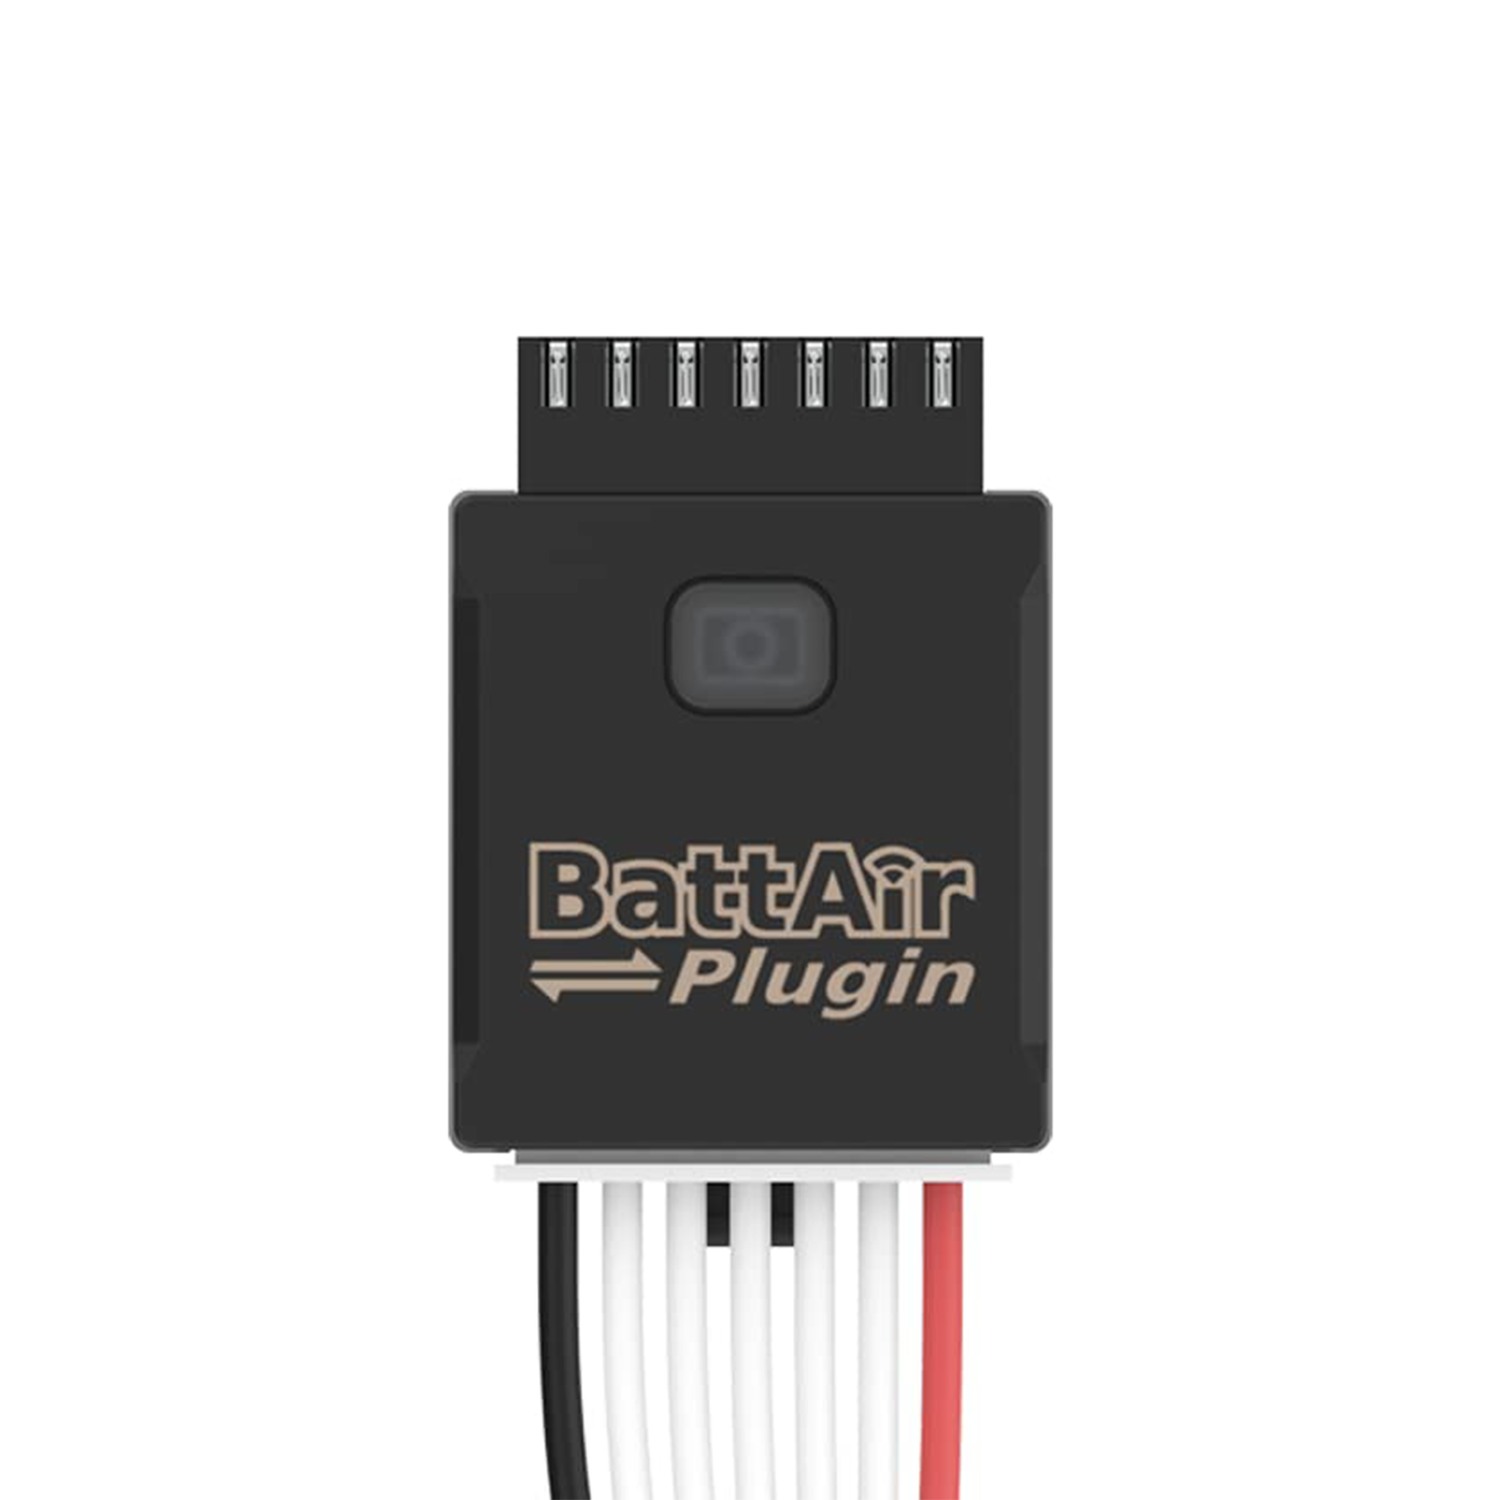 Plug-in Battair, 5 pacchetti 2/3-4s/5-6s Accessori modello RC per la governante della batteria Sistema di gestione della batteria intelligente